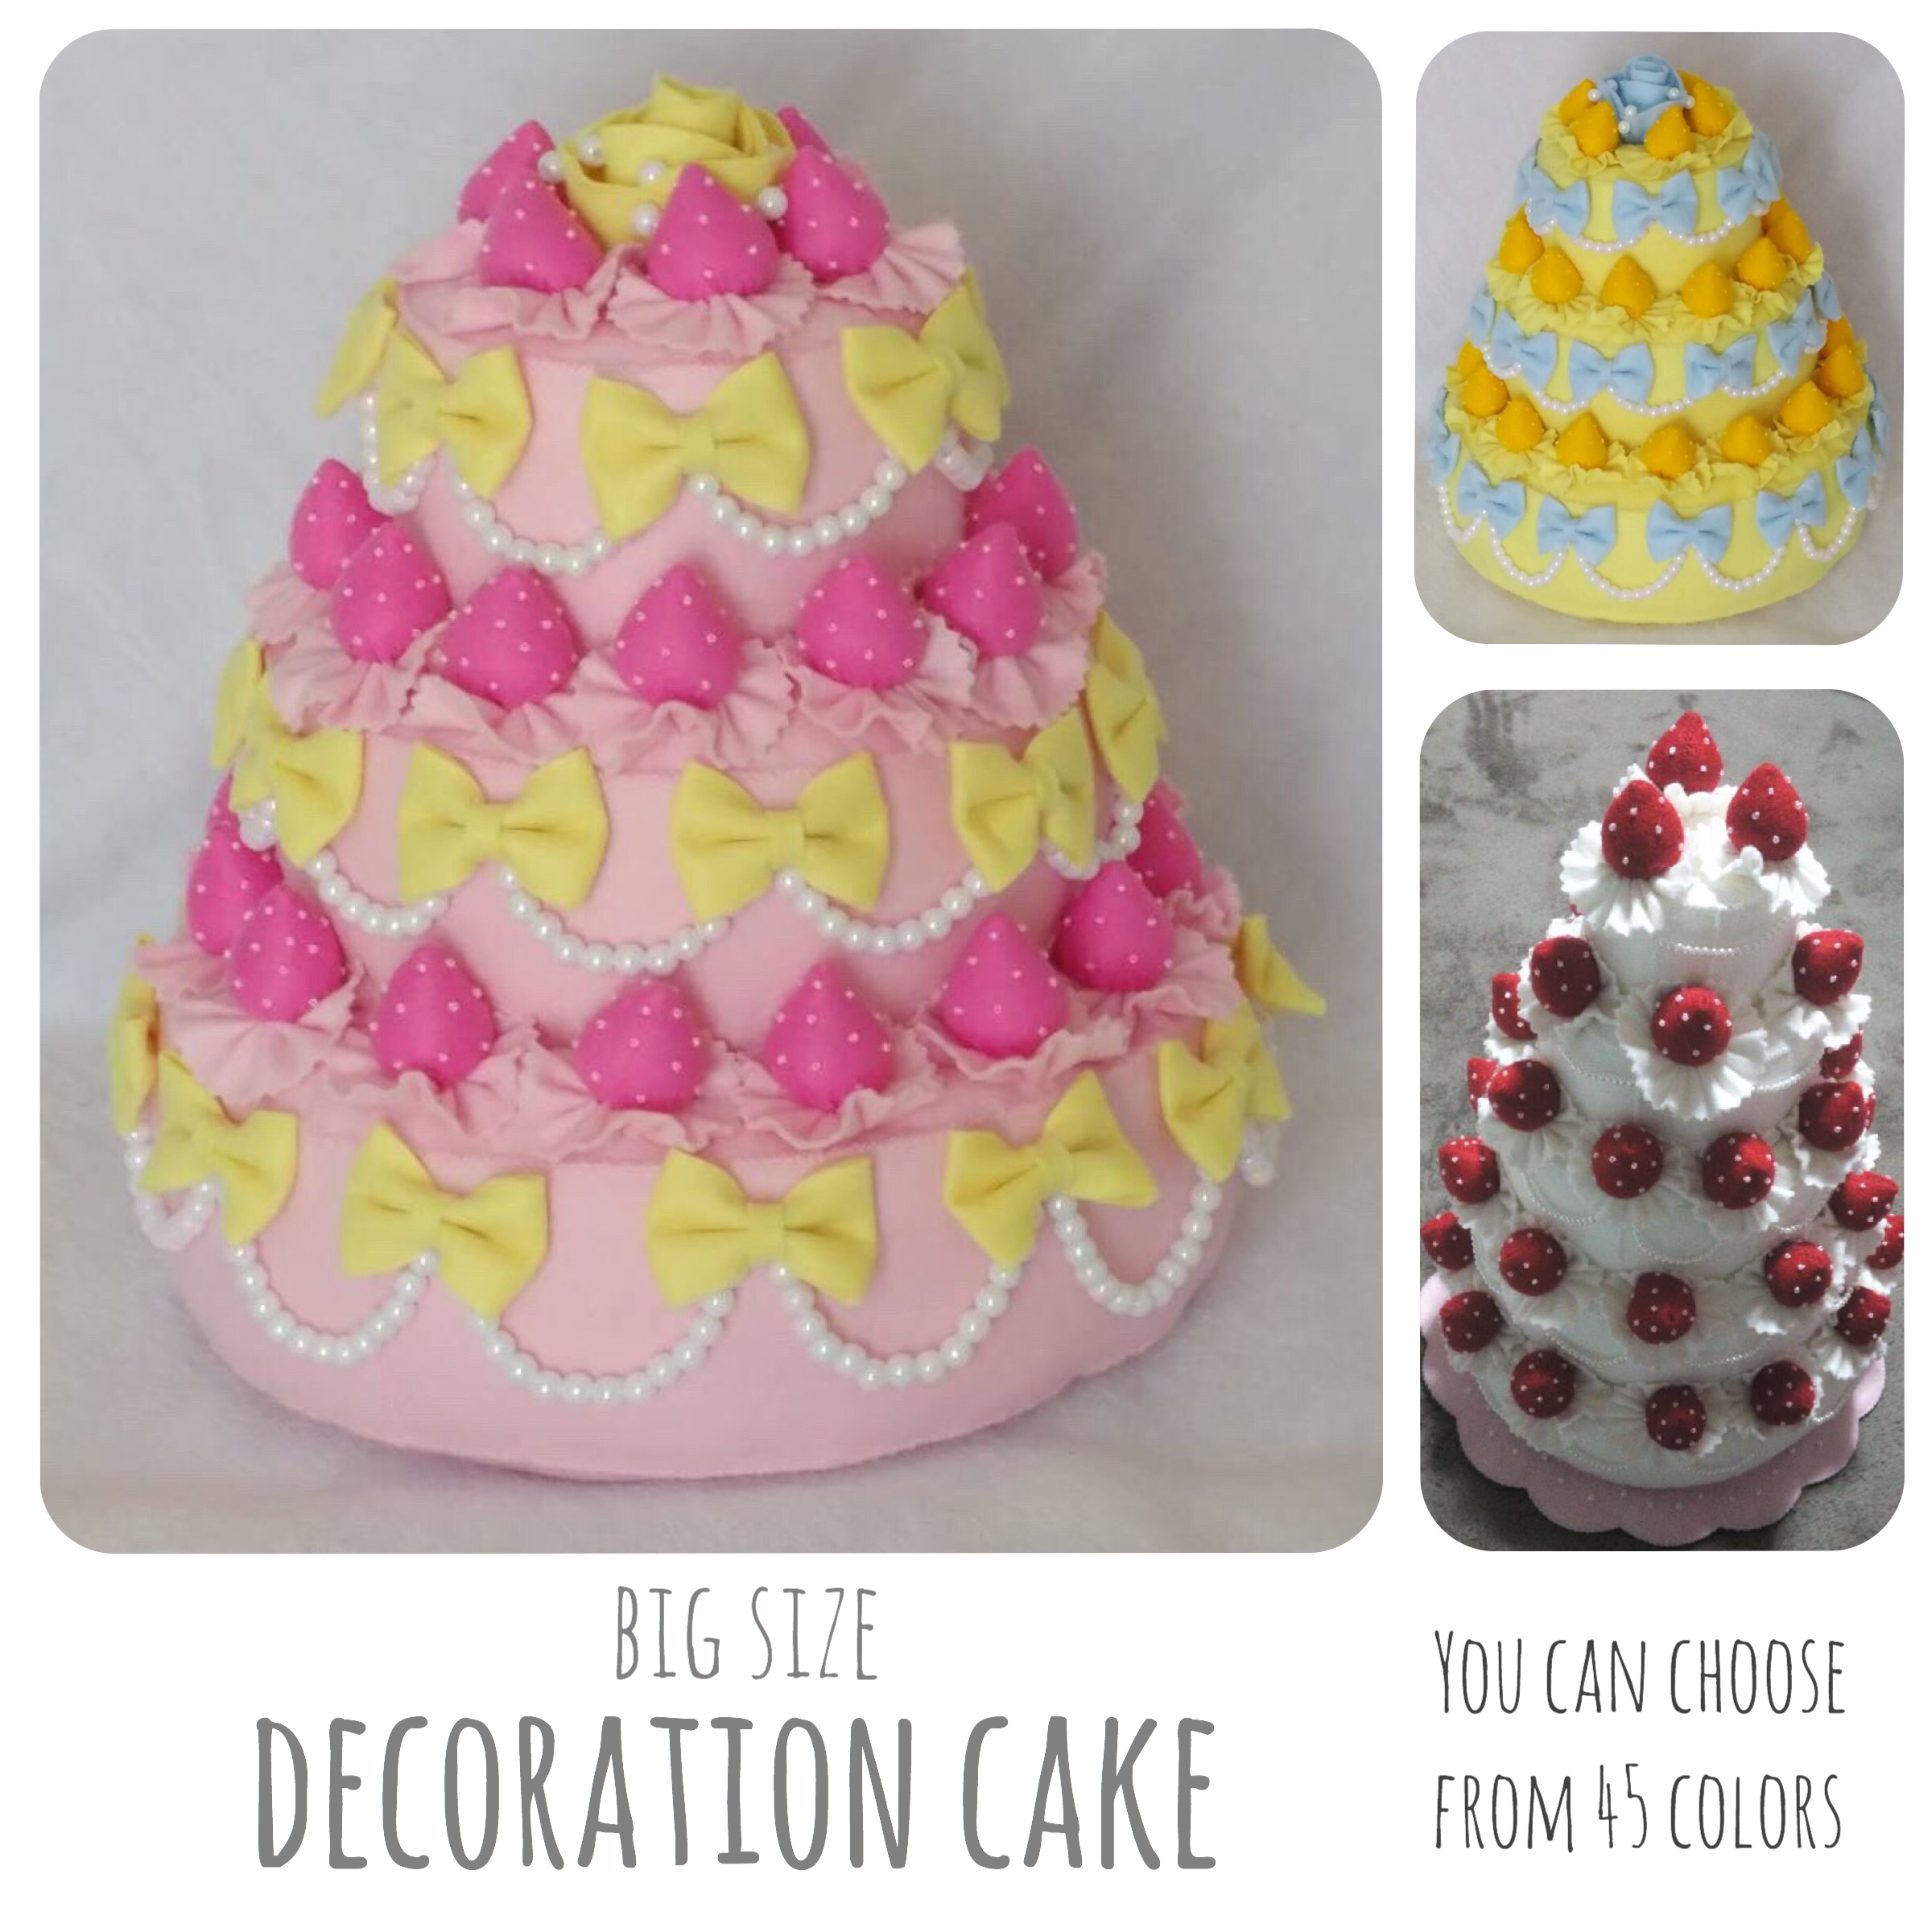 選べる45色 ビッグサイズのデコレーションケーキ 931 ウェディングケーキ フェルト いちご 誕生日 フォトアイテム Iichi ハンドメイド クラフト作品 手仕事品の通販